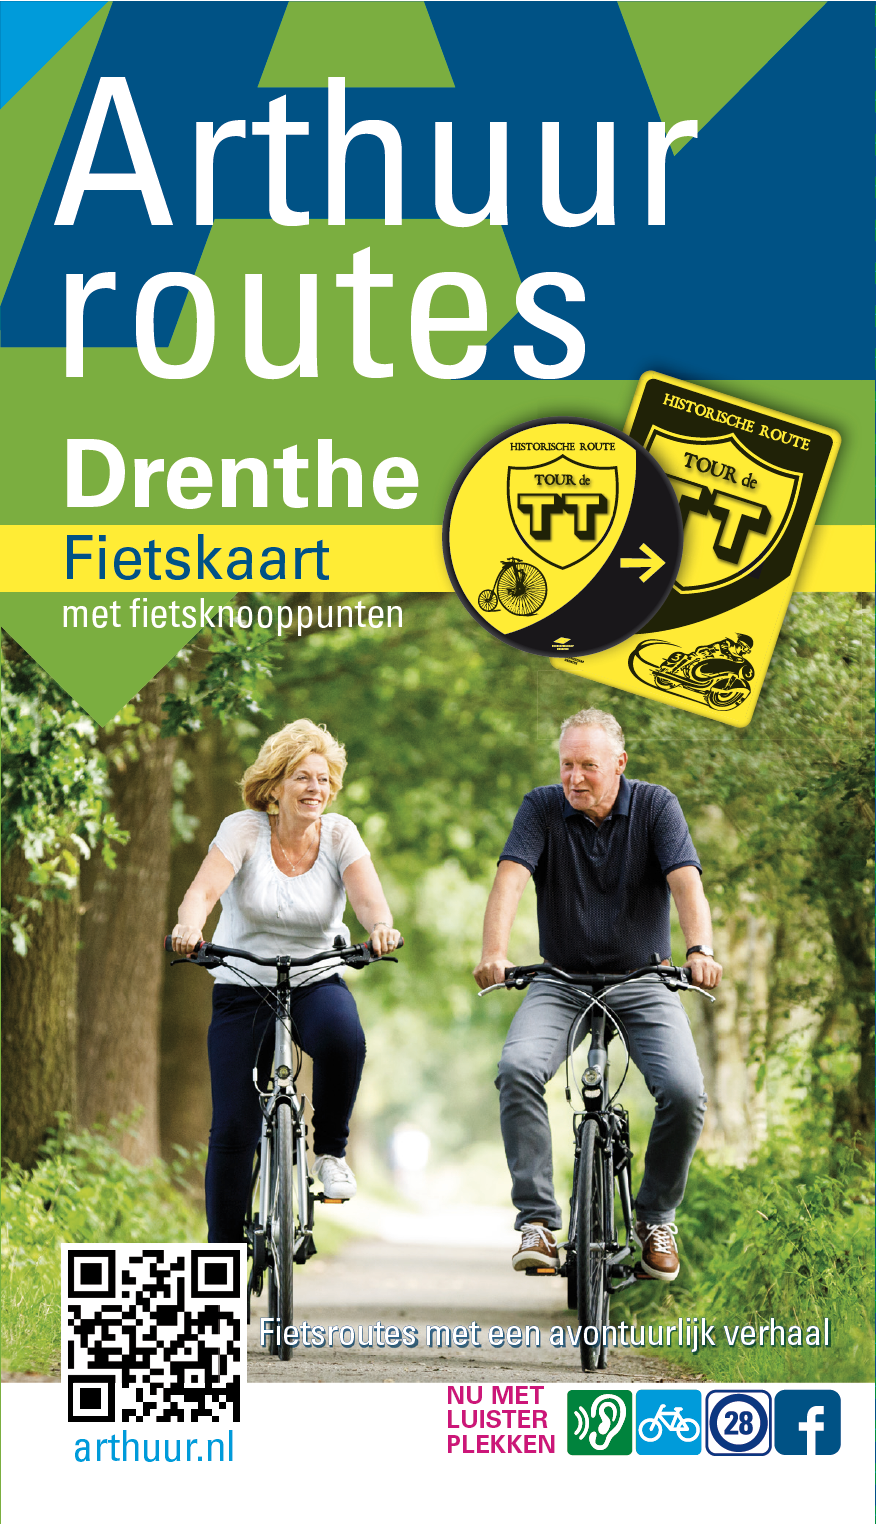 Afbeelding van de cover van de Arthuur fietsknooppuntenkaart Drenthe met twee fietsers op fiuetspad in het bos.